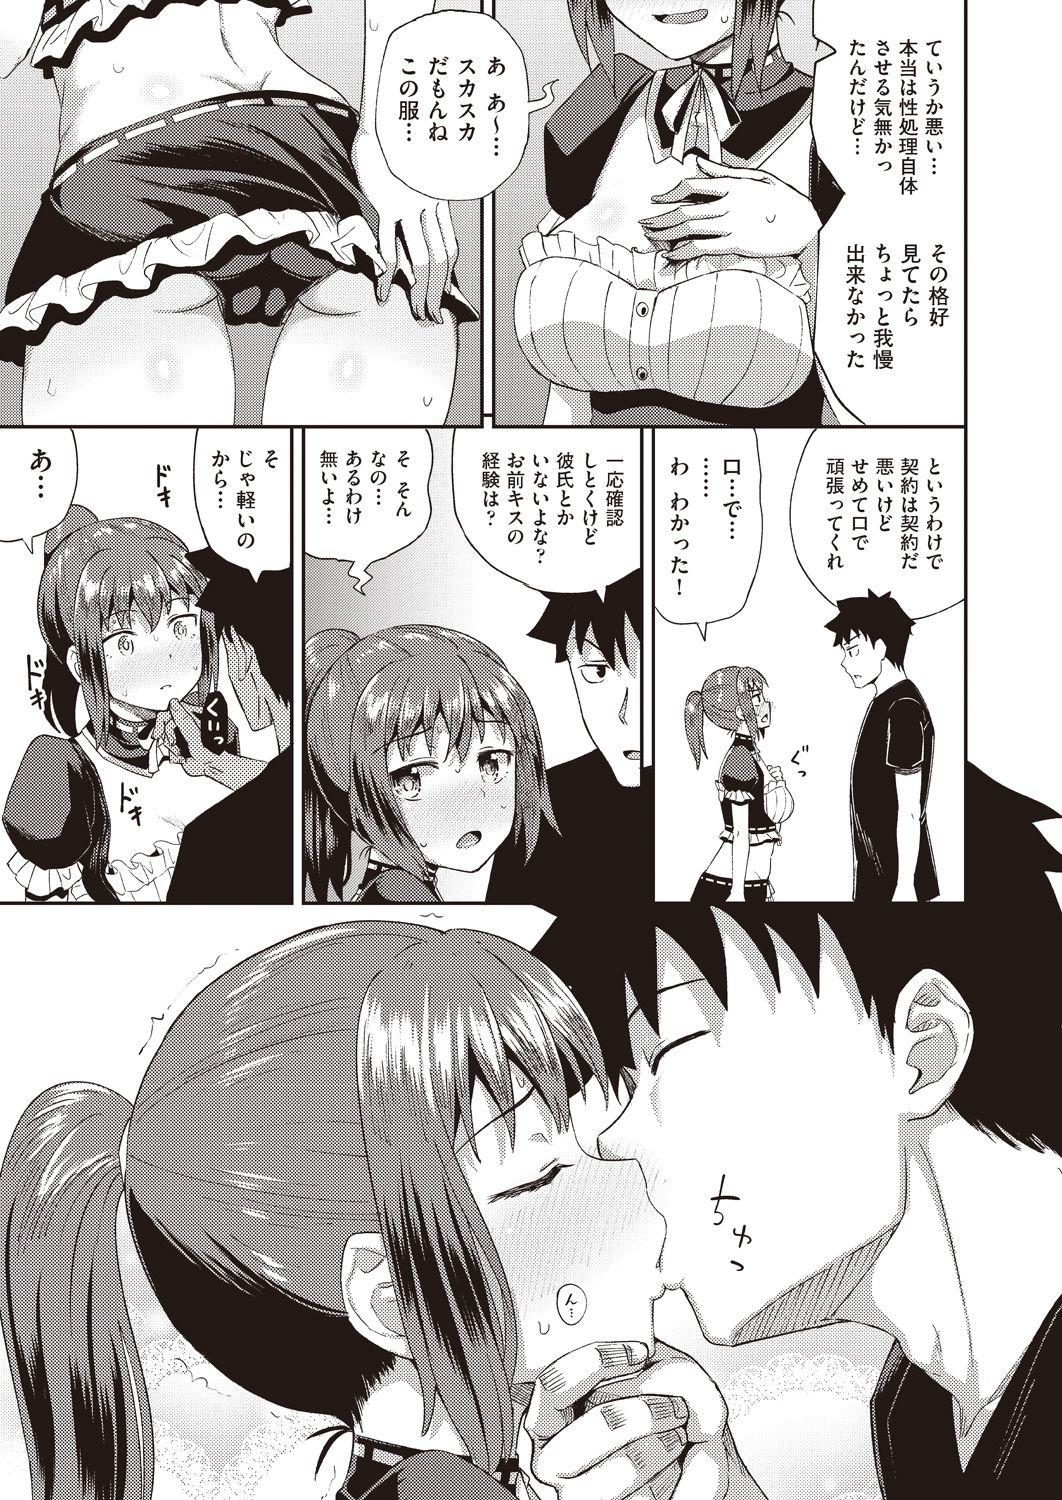 Slutty osananajimi wa ore no senzoku o kuchi meido hanbai-bi 1&2&3 【poncocchan】 Sex - Page 11